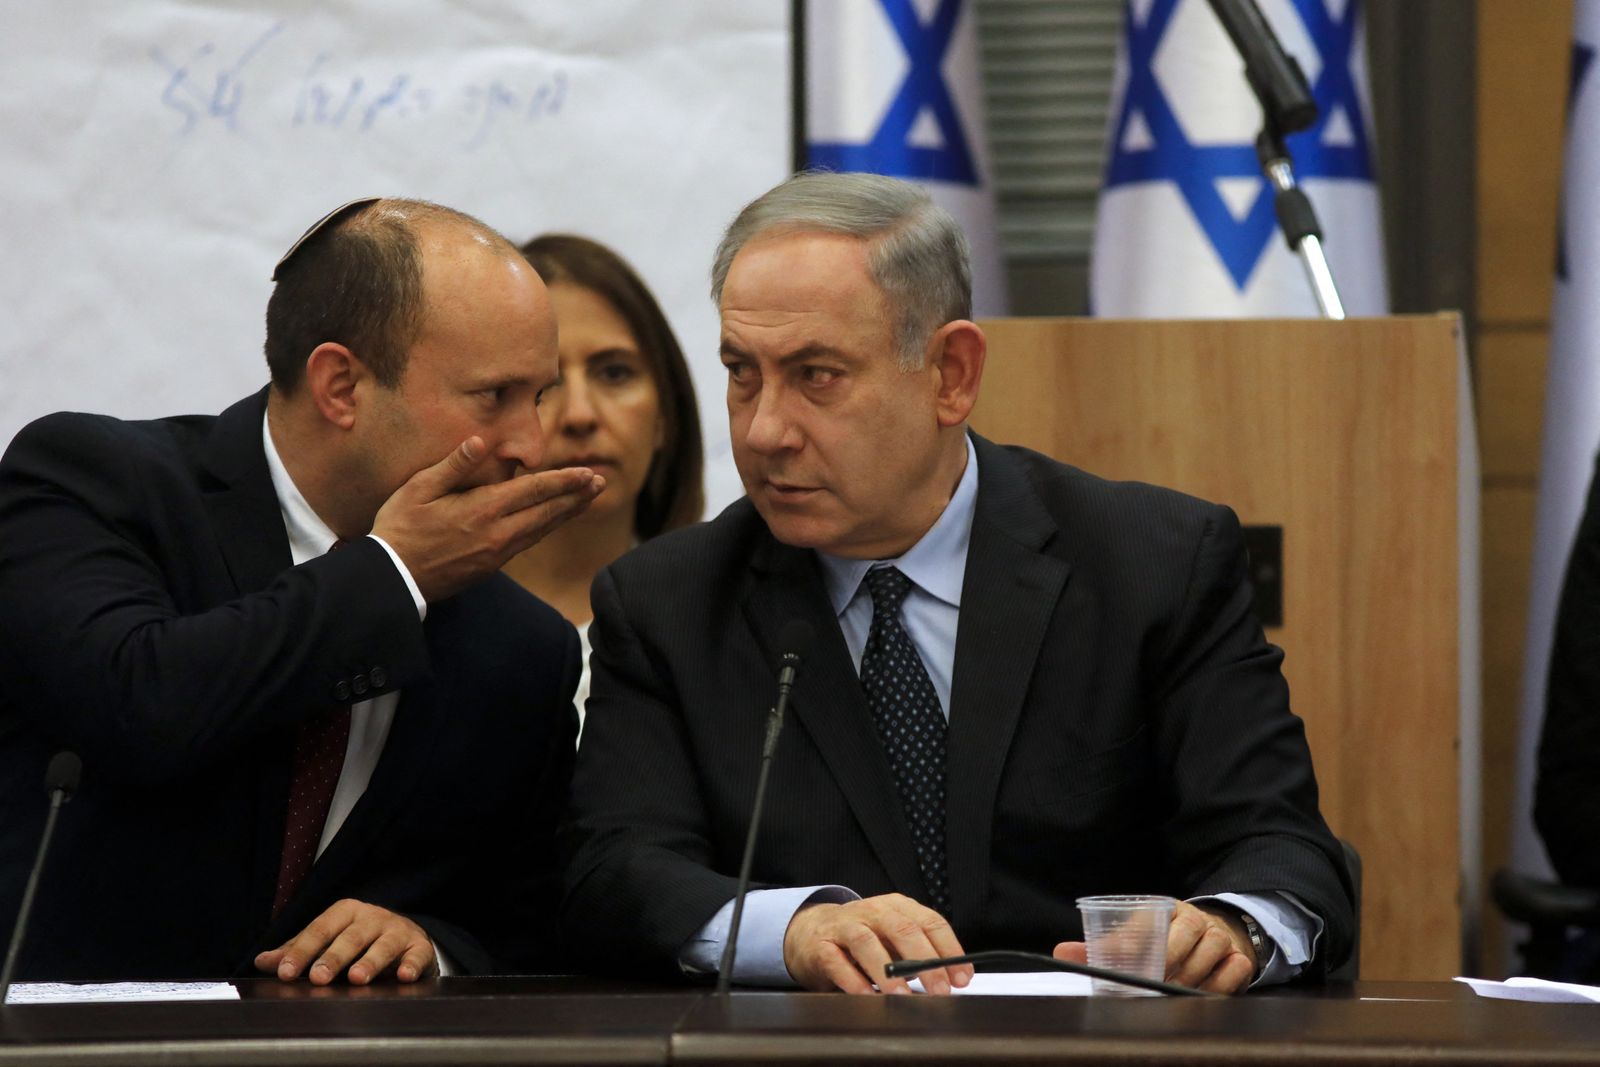 وزير الدفاع الإسرائيلي السابق نفتالي بينيت يهمس في أذن رئيس الوزراء بنيامين نتنياهو خلال اجتماع في الكنيست - 4 مارس 2020 - AFP